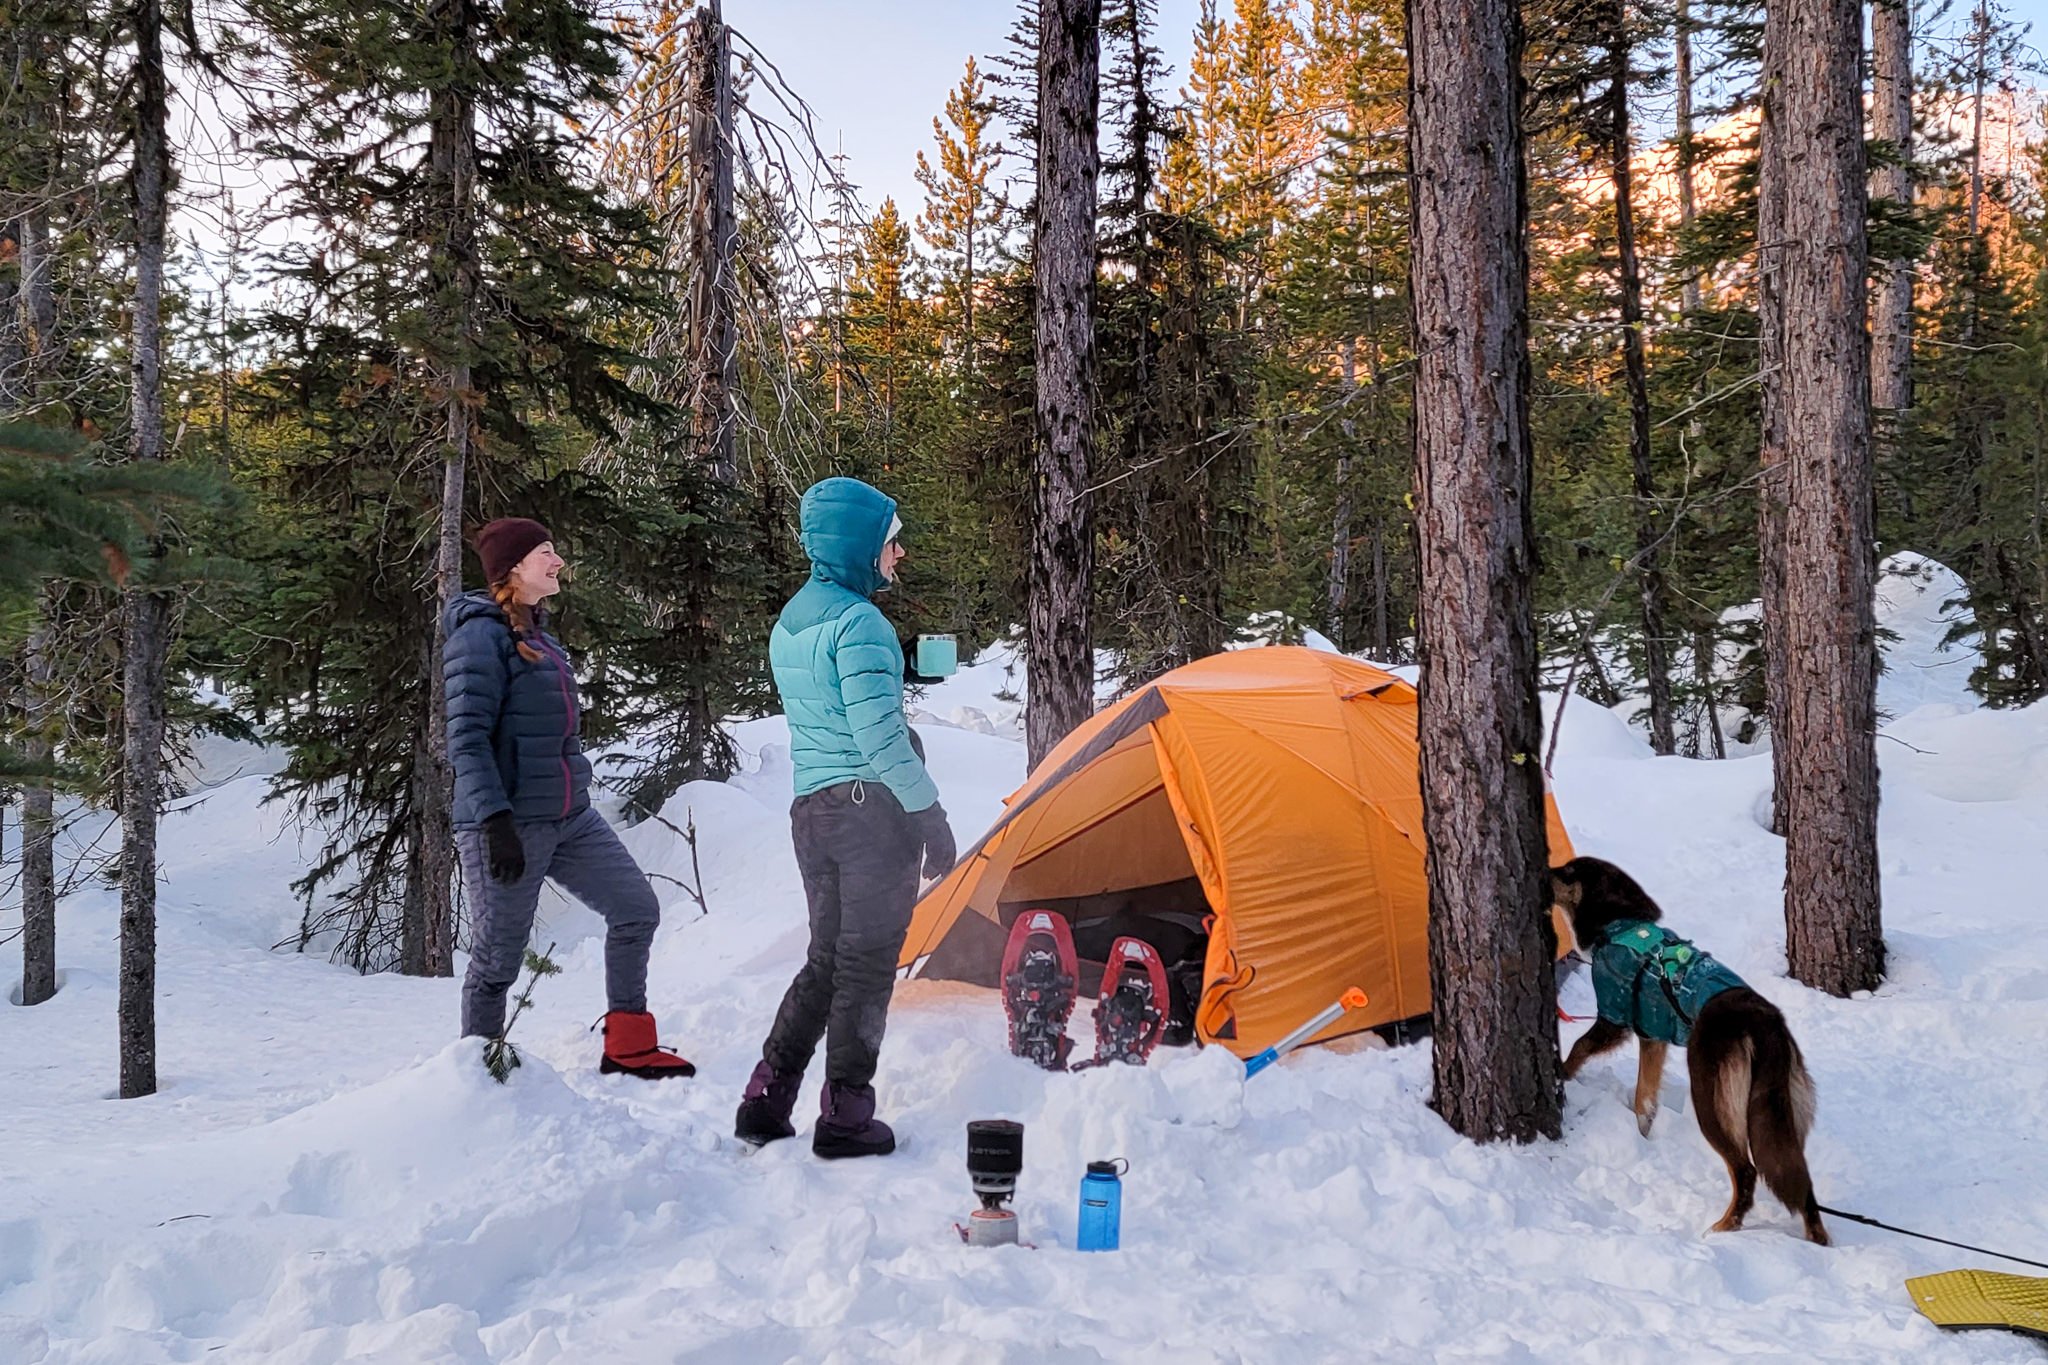 Two women wearing down pants in a snowy winter camping scene